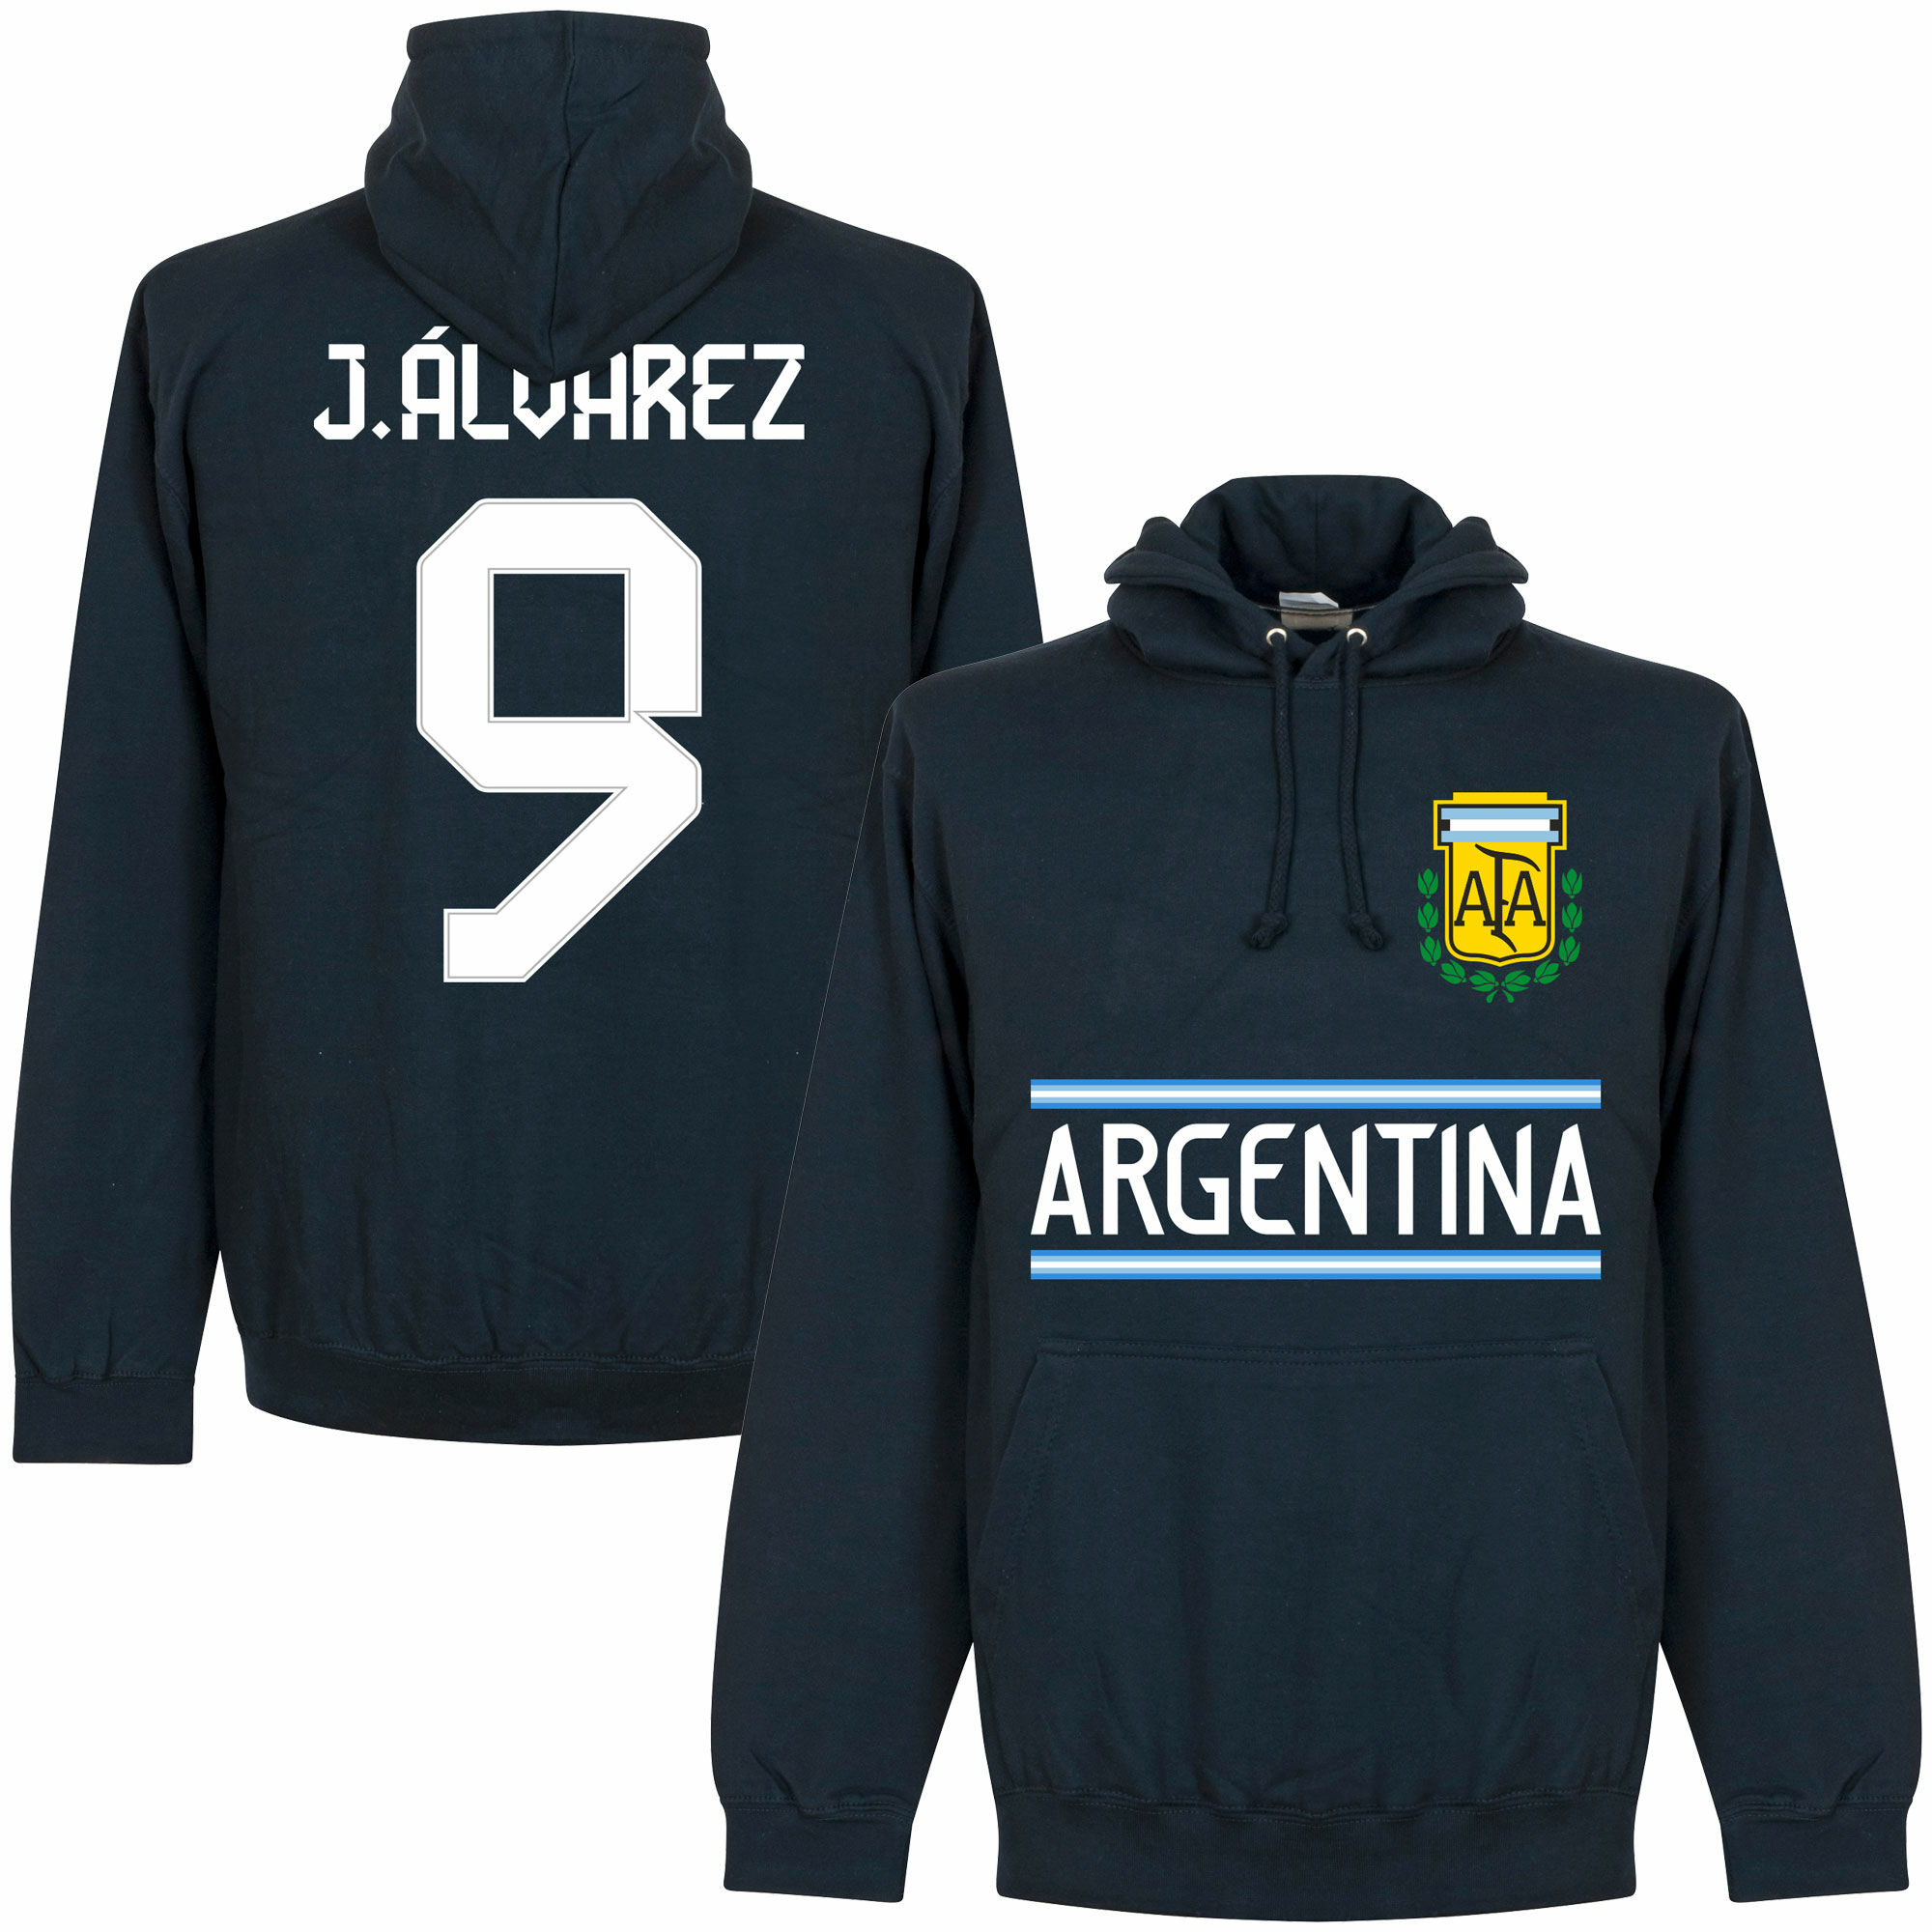 Argentina - Mikina s kapucí - modrá, Julián Álvarez, číslo 9